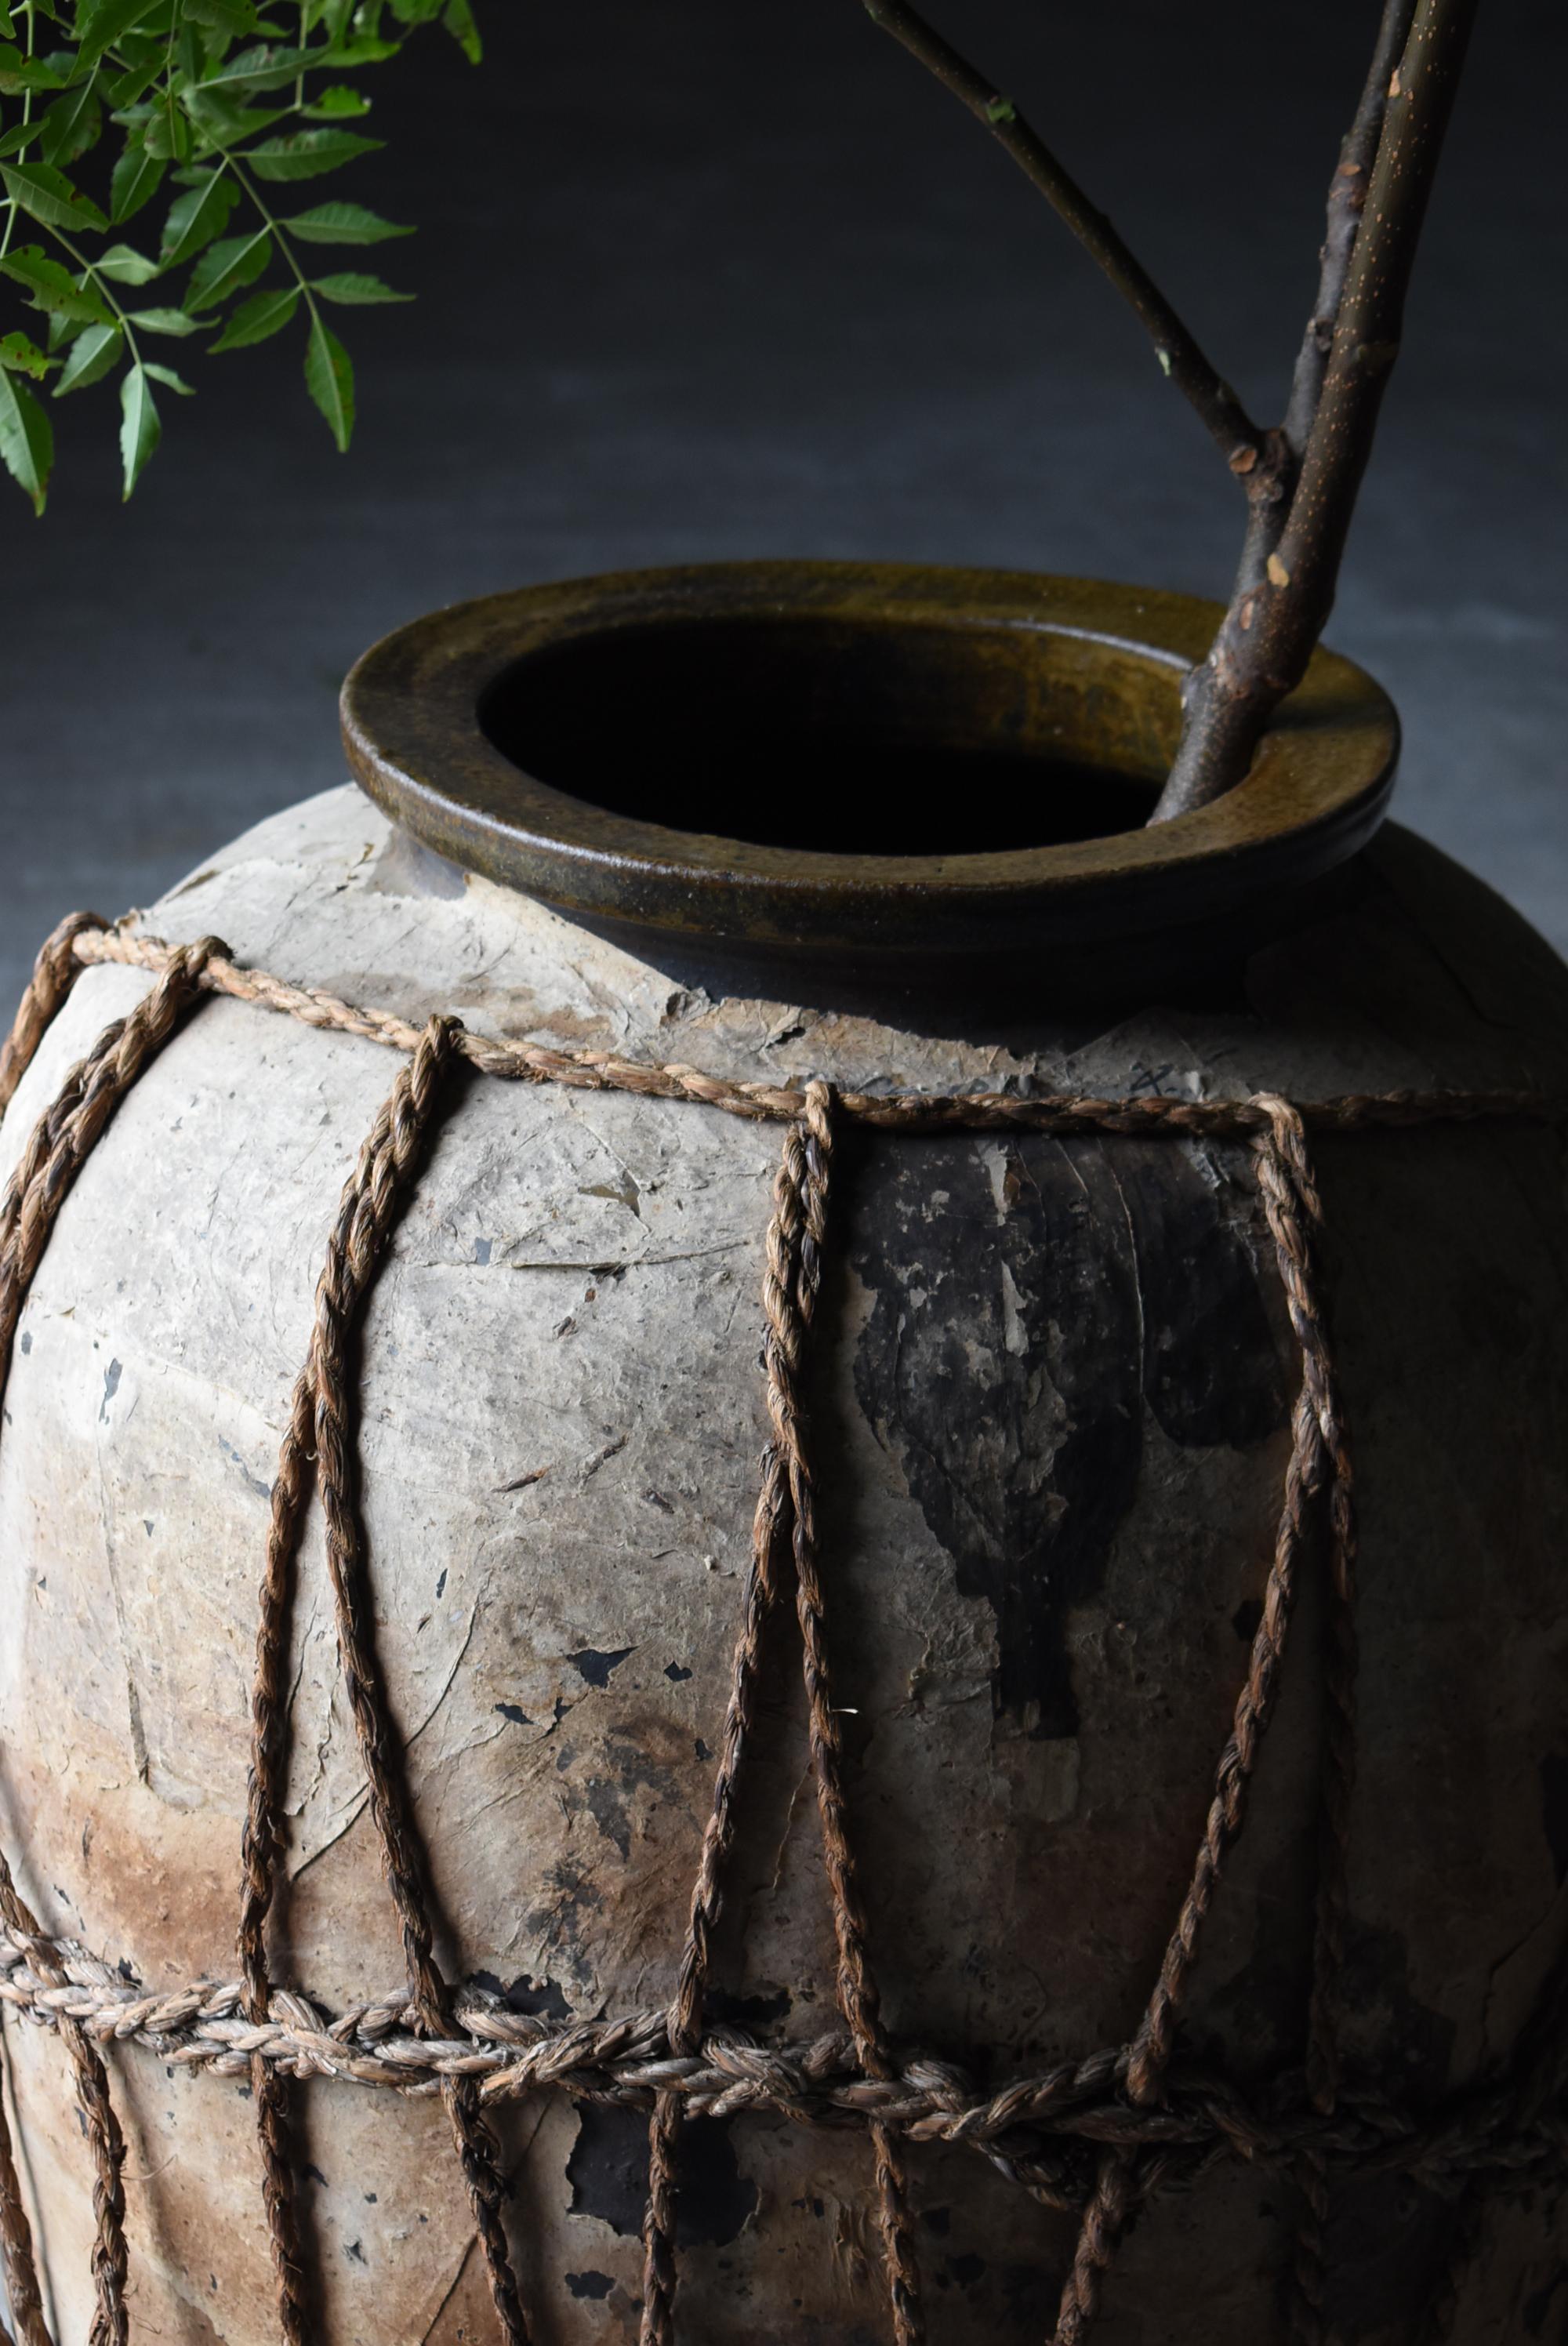 Japanese Antique Large Pottery Vase 1860s-1900s / Flower Vase Vessel Wabi Sabi 15